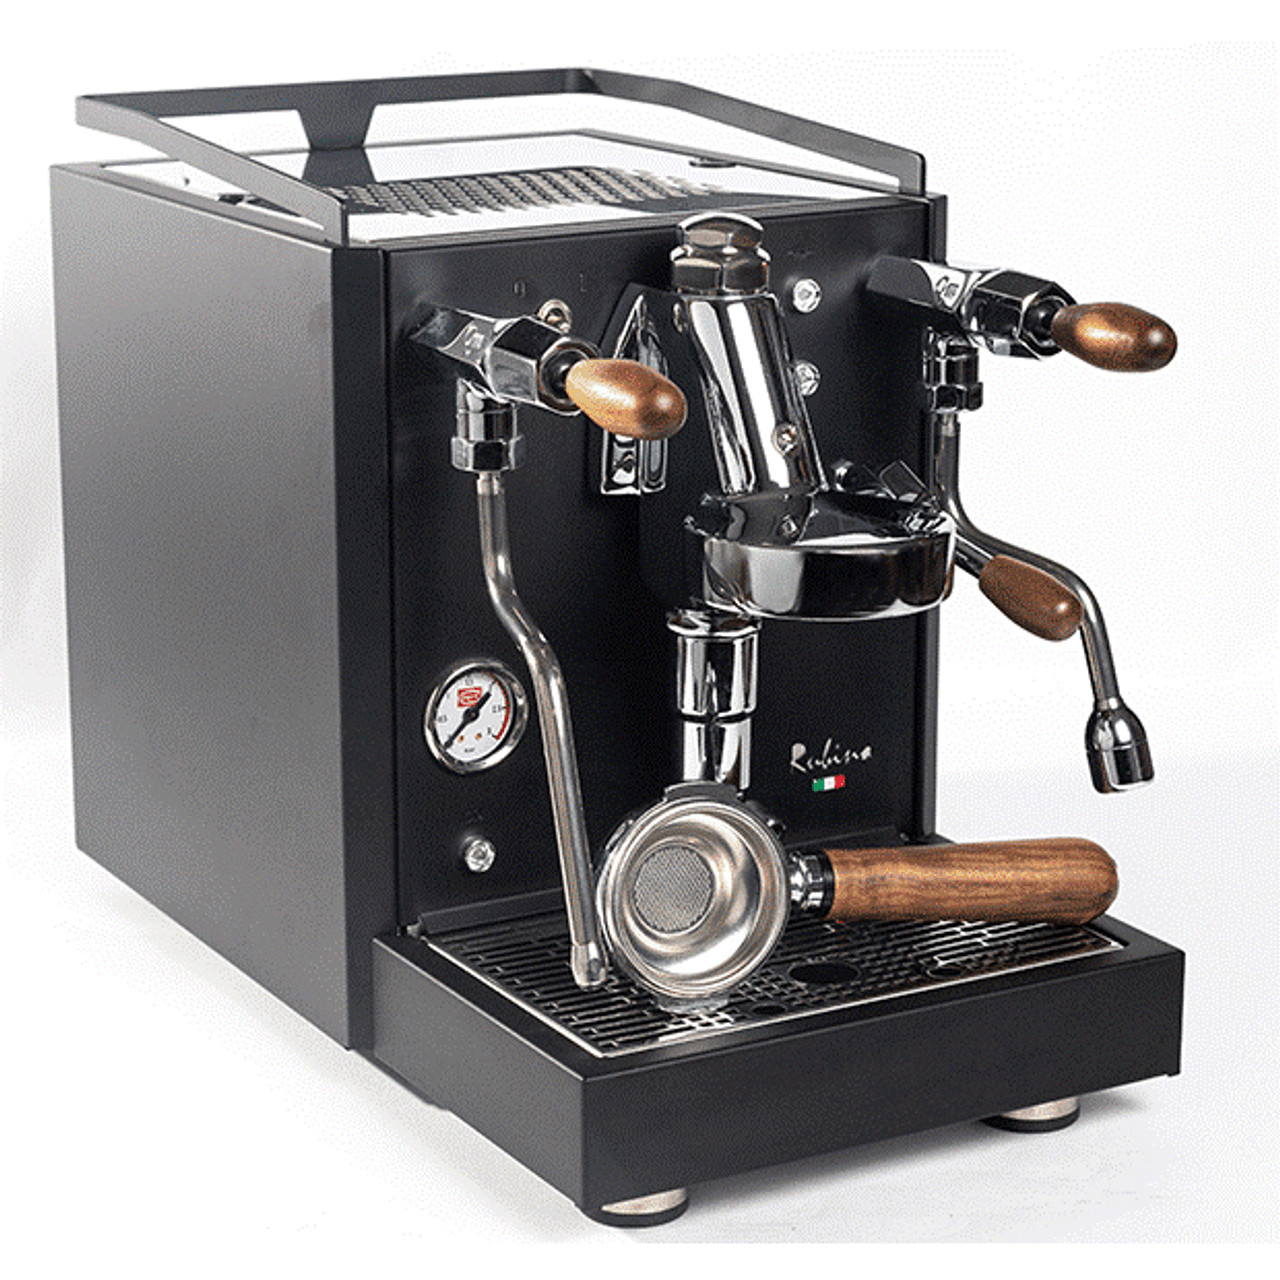 Quick Mill Rubino Matt Black with Wood Coffee Machine